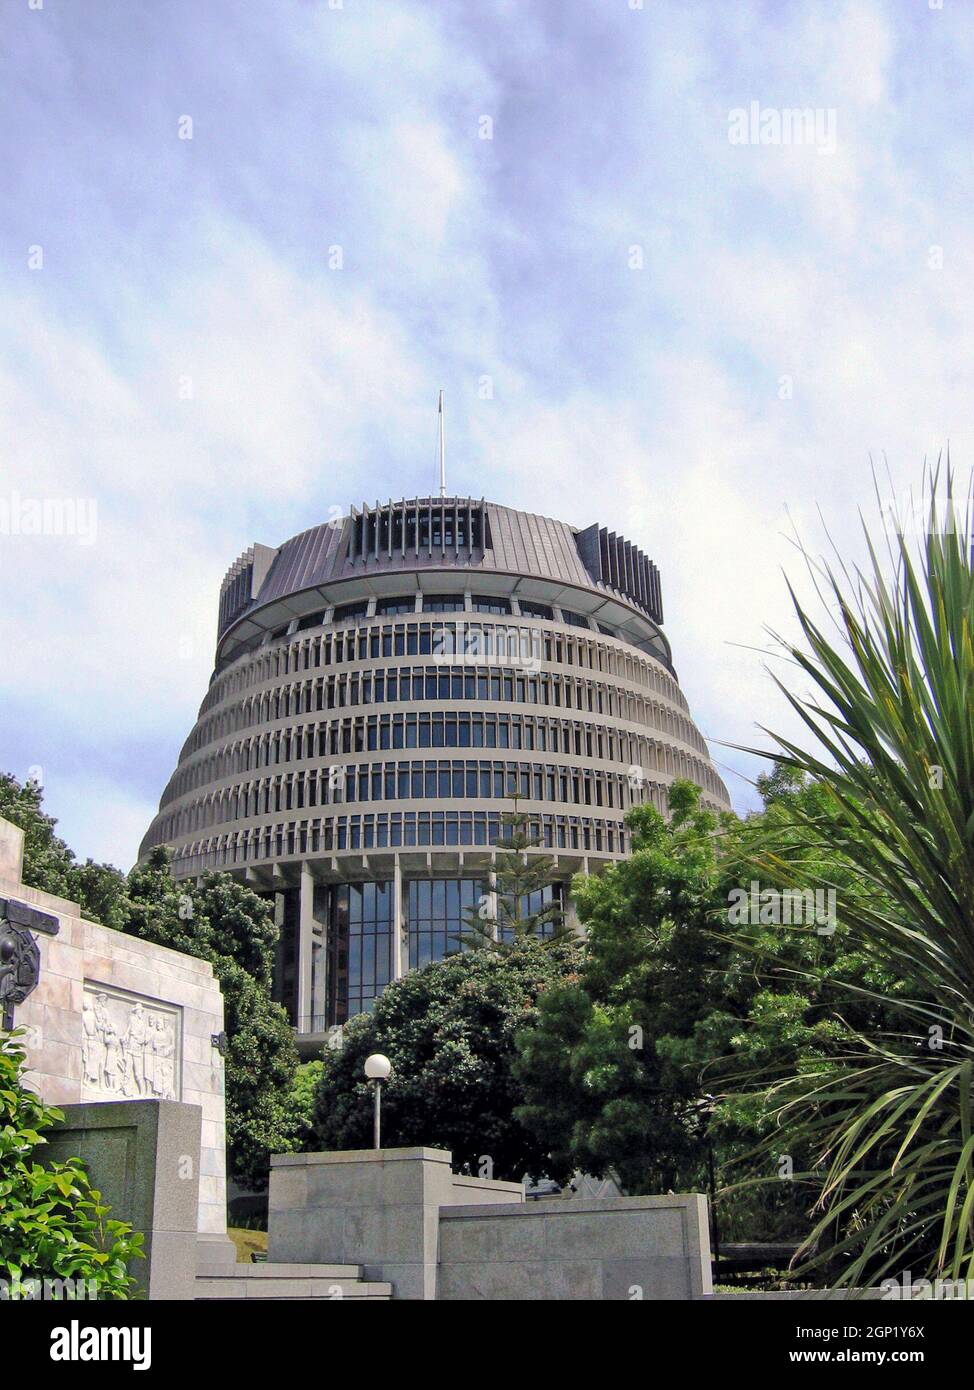 Der „Beehive“ ist der Exekutivflügel des neuseeländischen parlaments. Das 1981 fertiggestellte Gebäude ist zu einem Wahrzeichen Wellingtons und Neuseelands geworden. Das zehnstöckige Gebäude umfasst vier unterirdische Ebenen und wird aufgrund seines architektonischen Stils, der einem Bienenstock ähnelt, als Bienenstock bezeichnet. Stockfoto